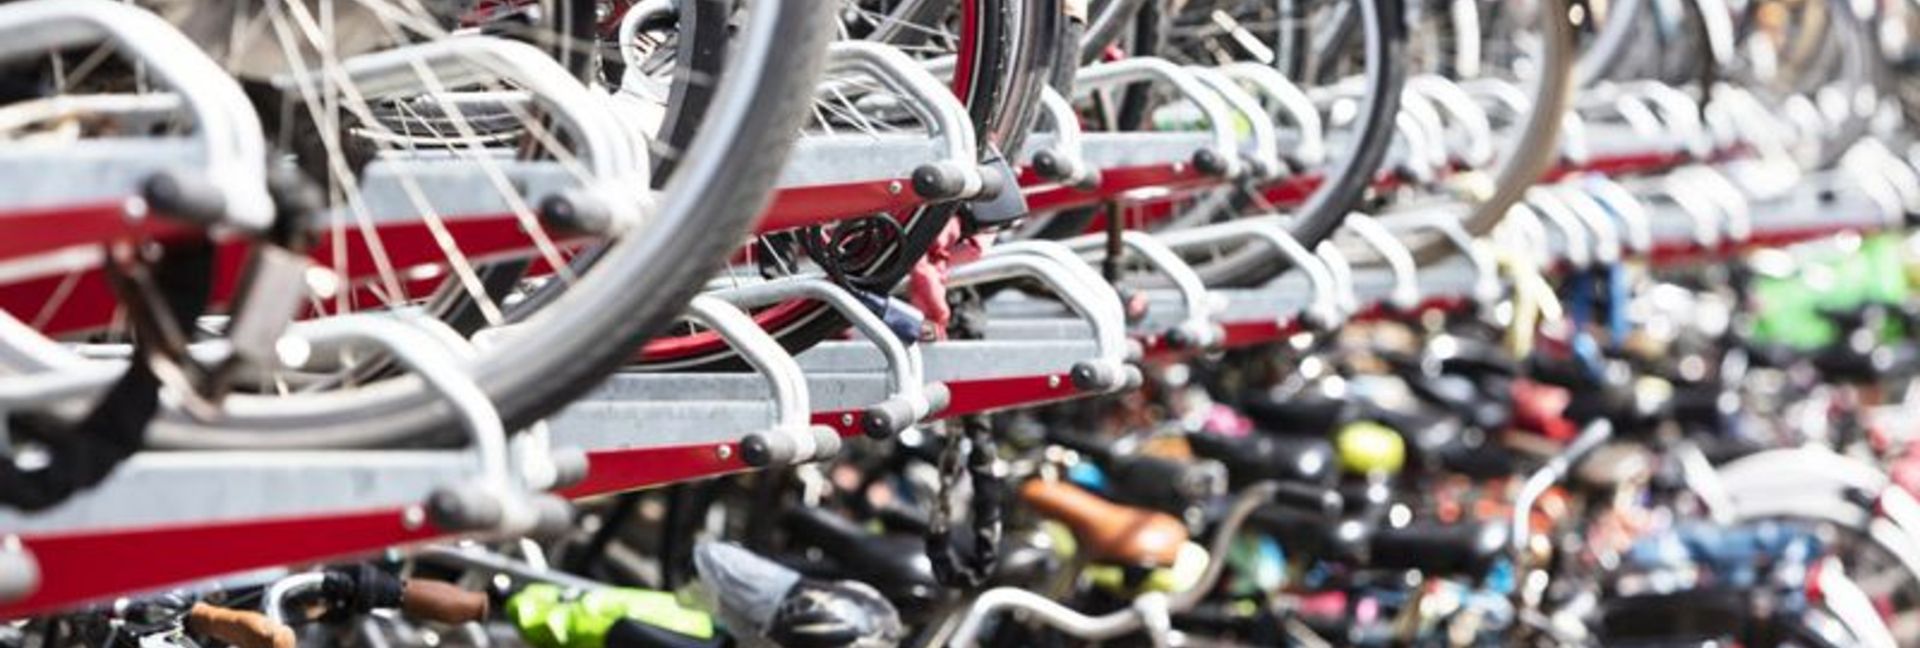 Fahrräder in Doppelstockparker 